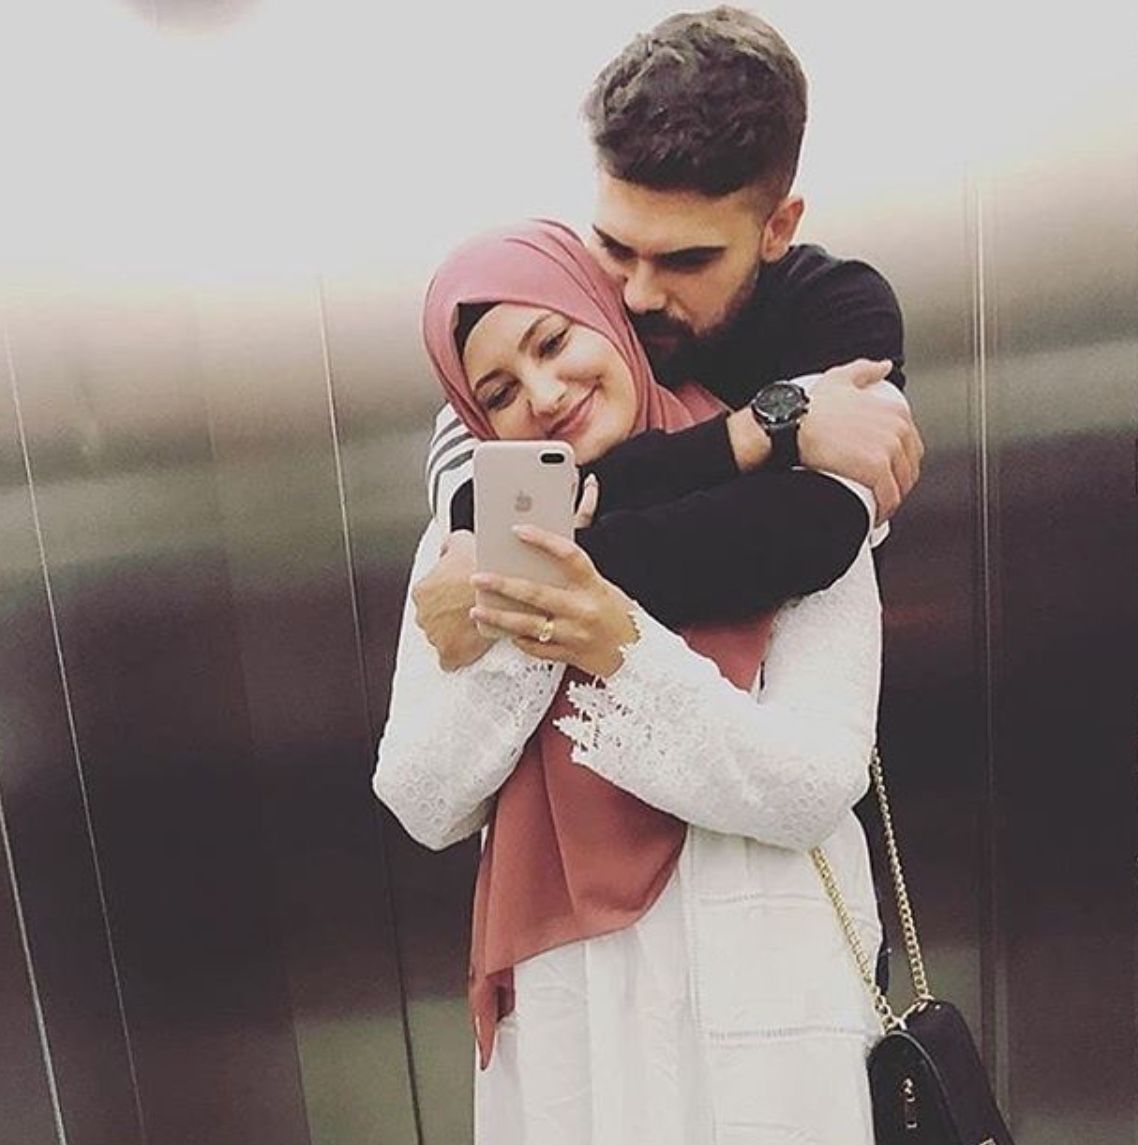 حکم شرعی بوسیدن همسر در ماه مبارک رمضان